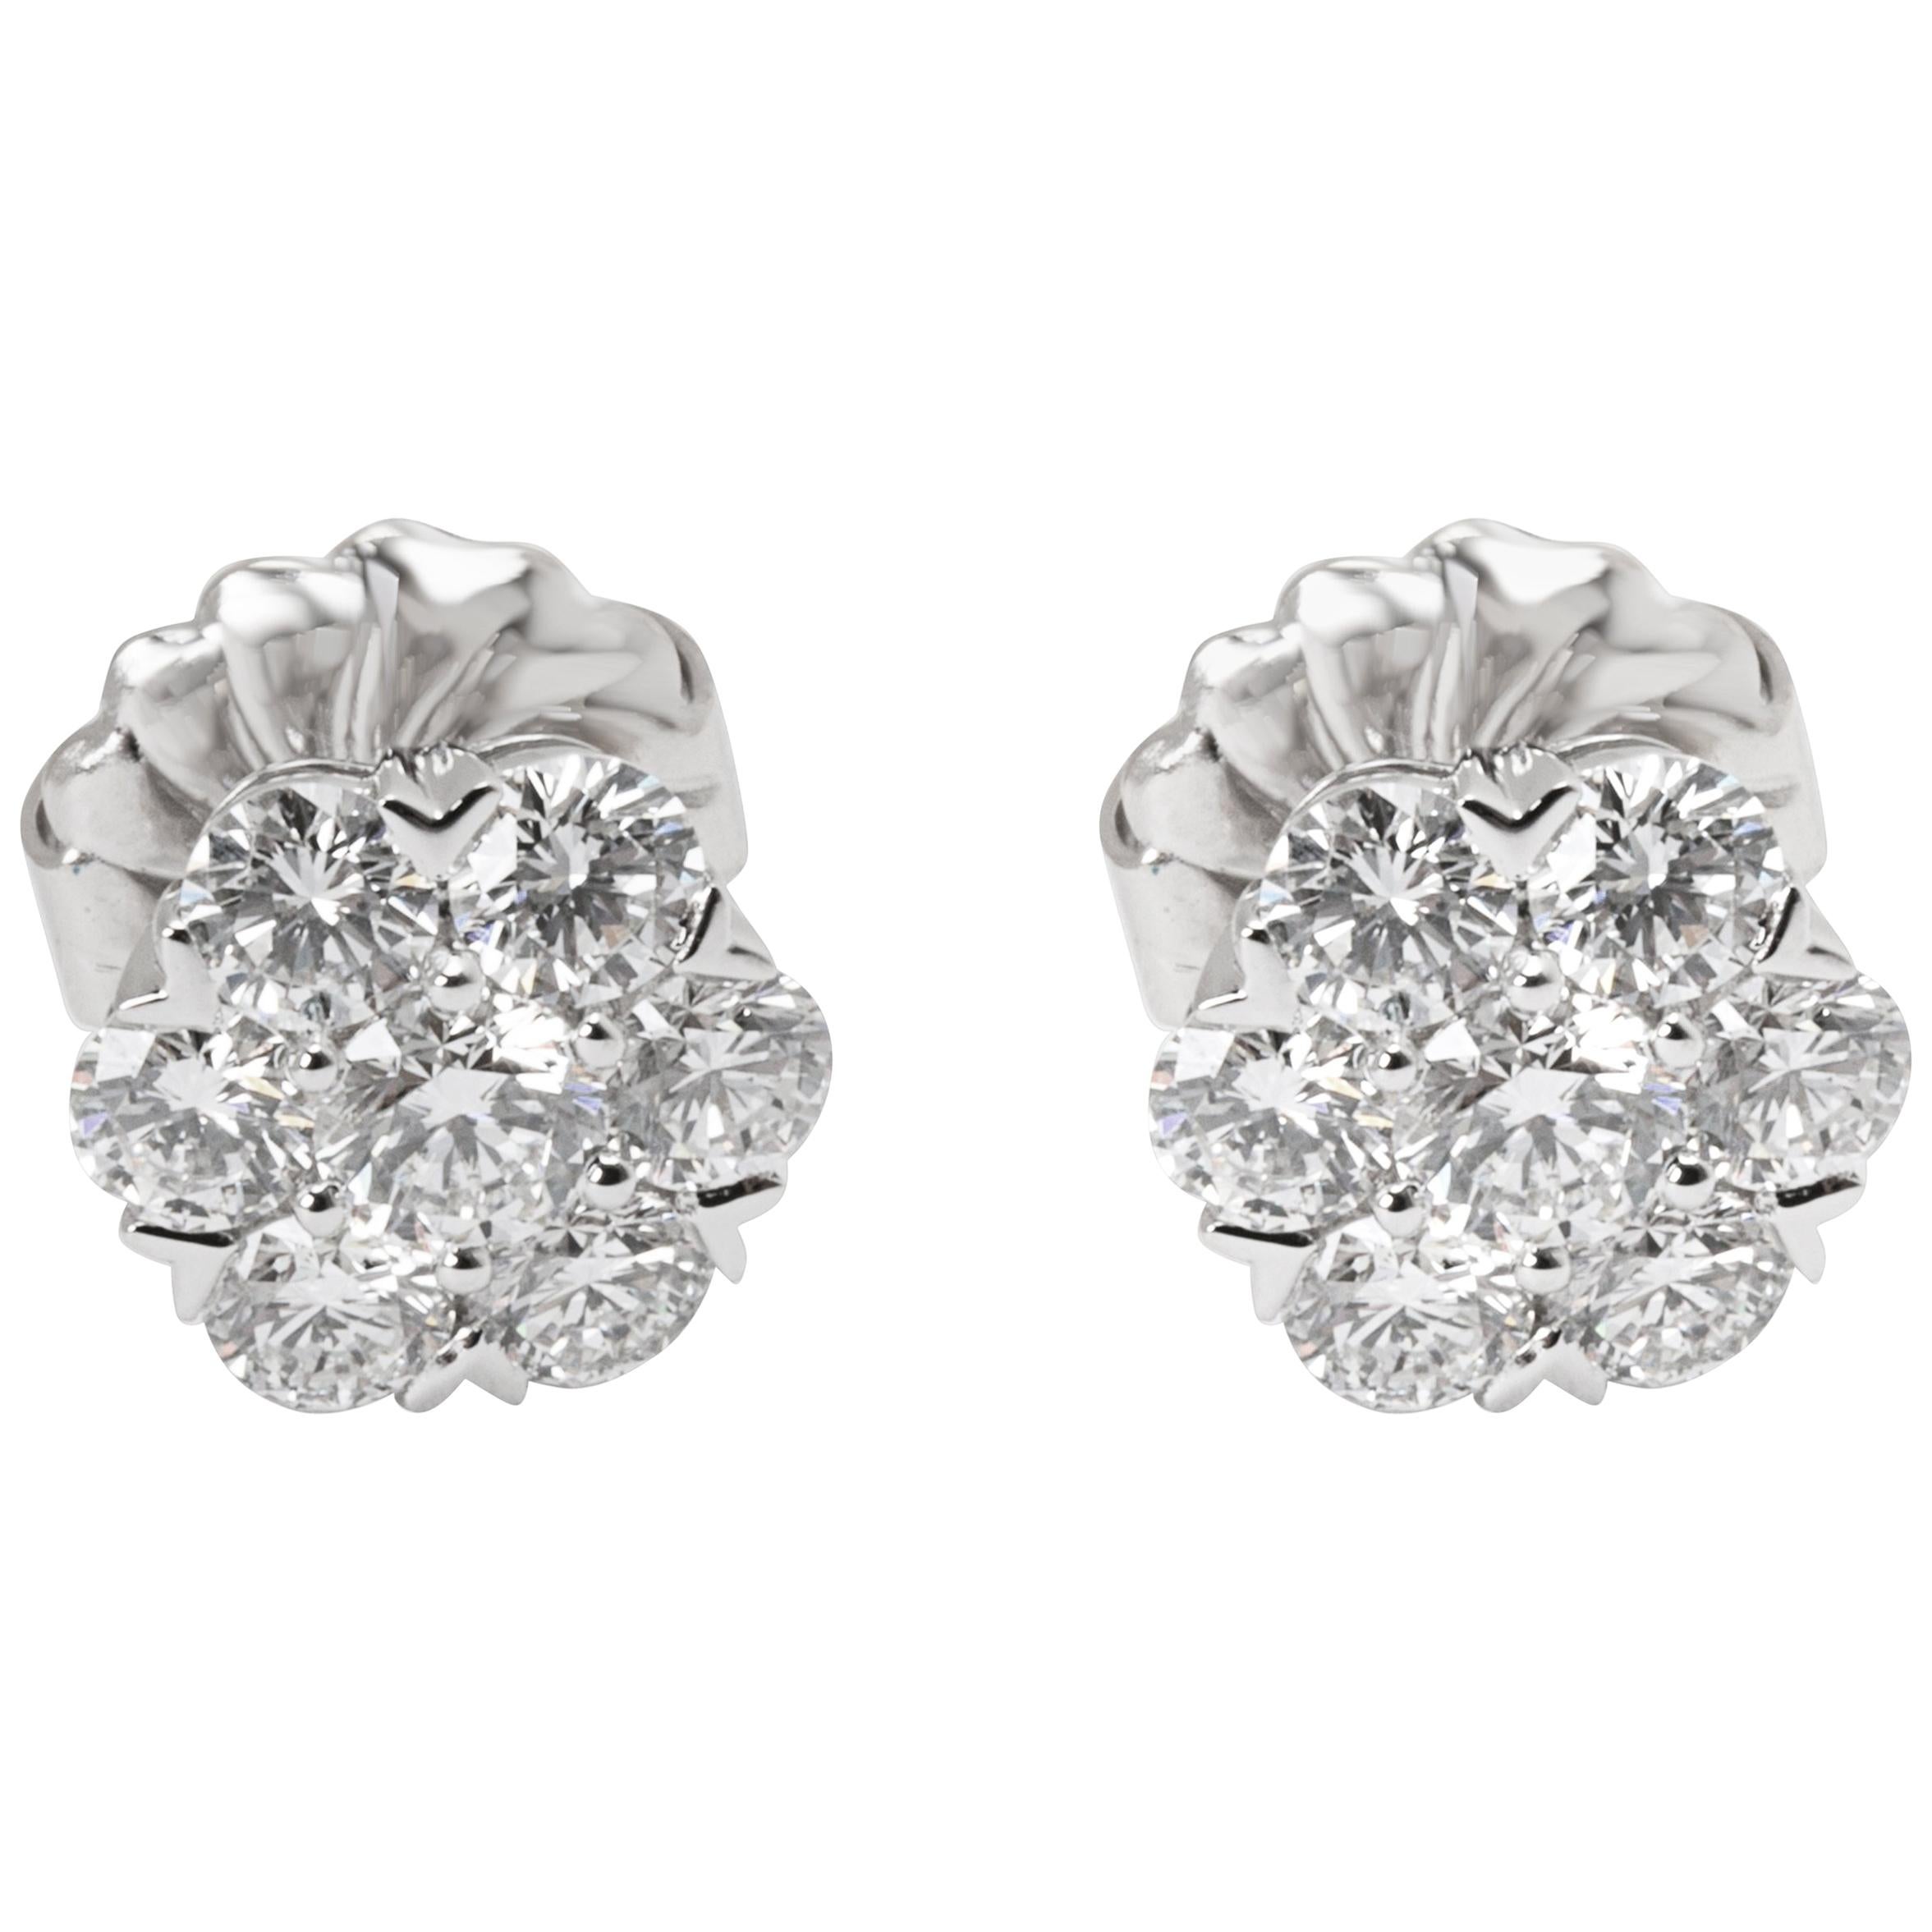 Van Cleef & Arpels Diamond Large Fleurette Earrings in 18 Karat Gold 1.25 Carat